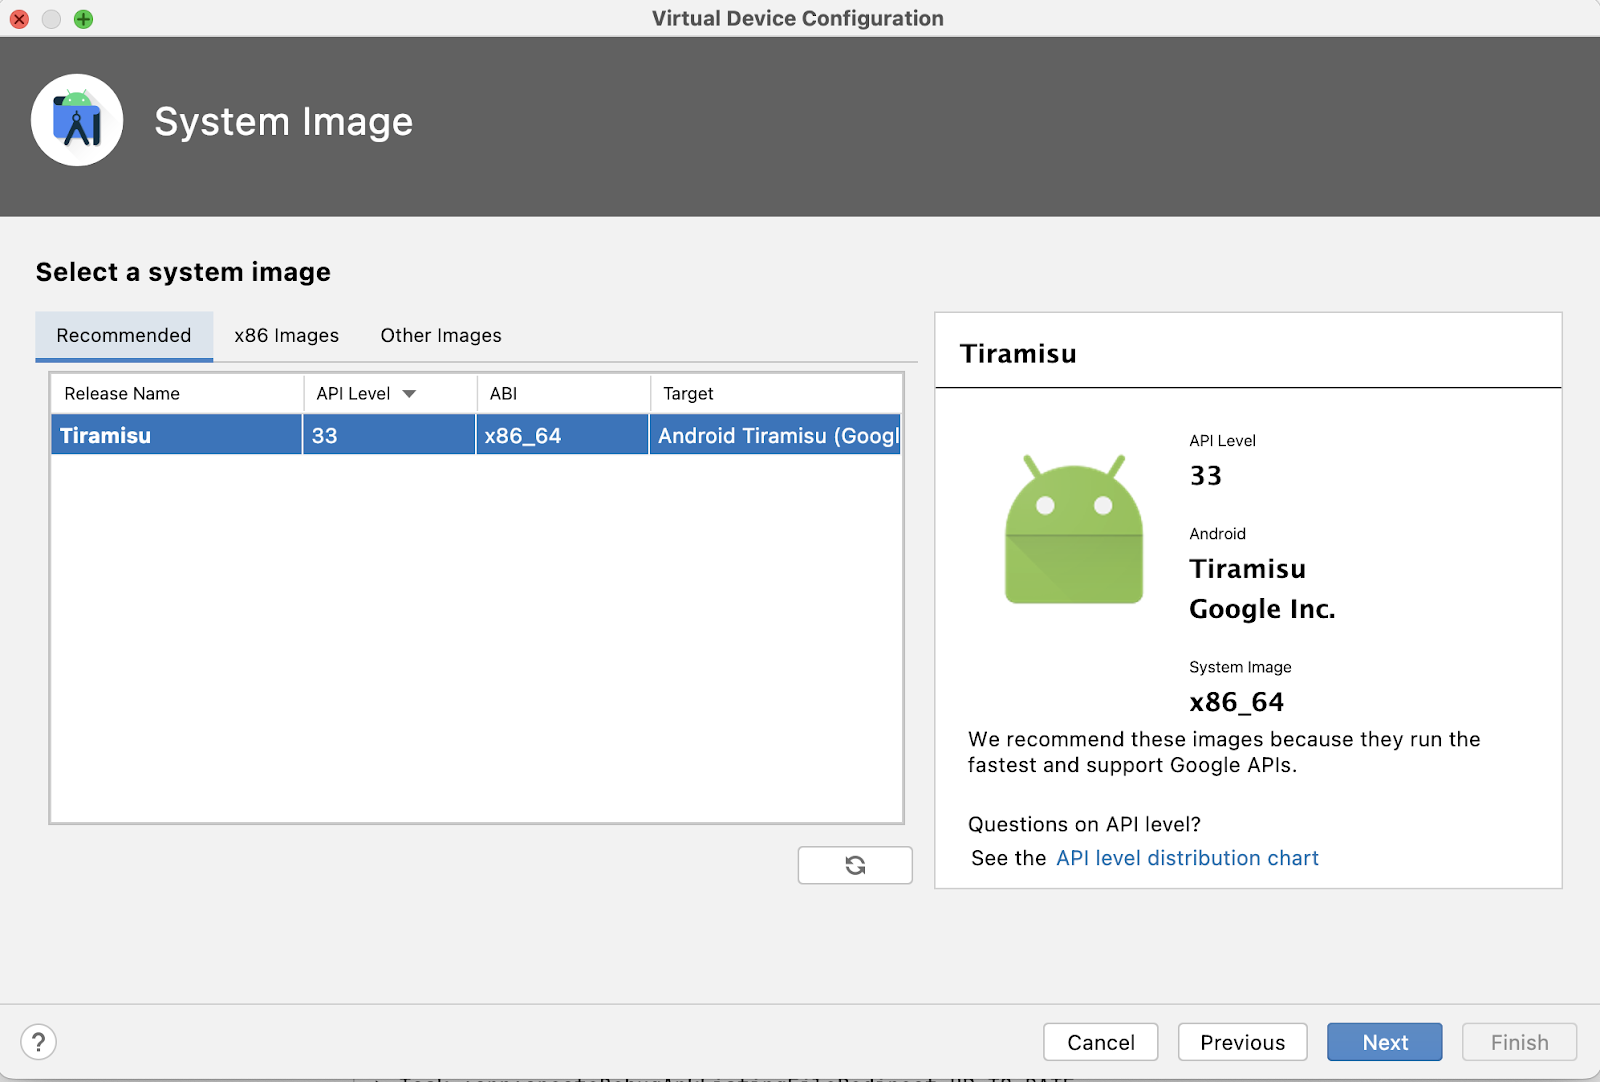 [Virtual Device Configuration] ウィンドウに、システム イメージを選択するプロンプトが表示されています。Tiramisu API が選択されています。